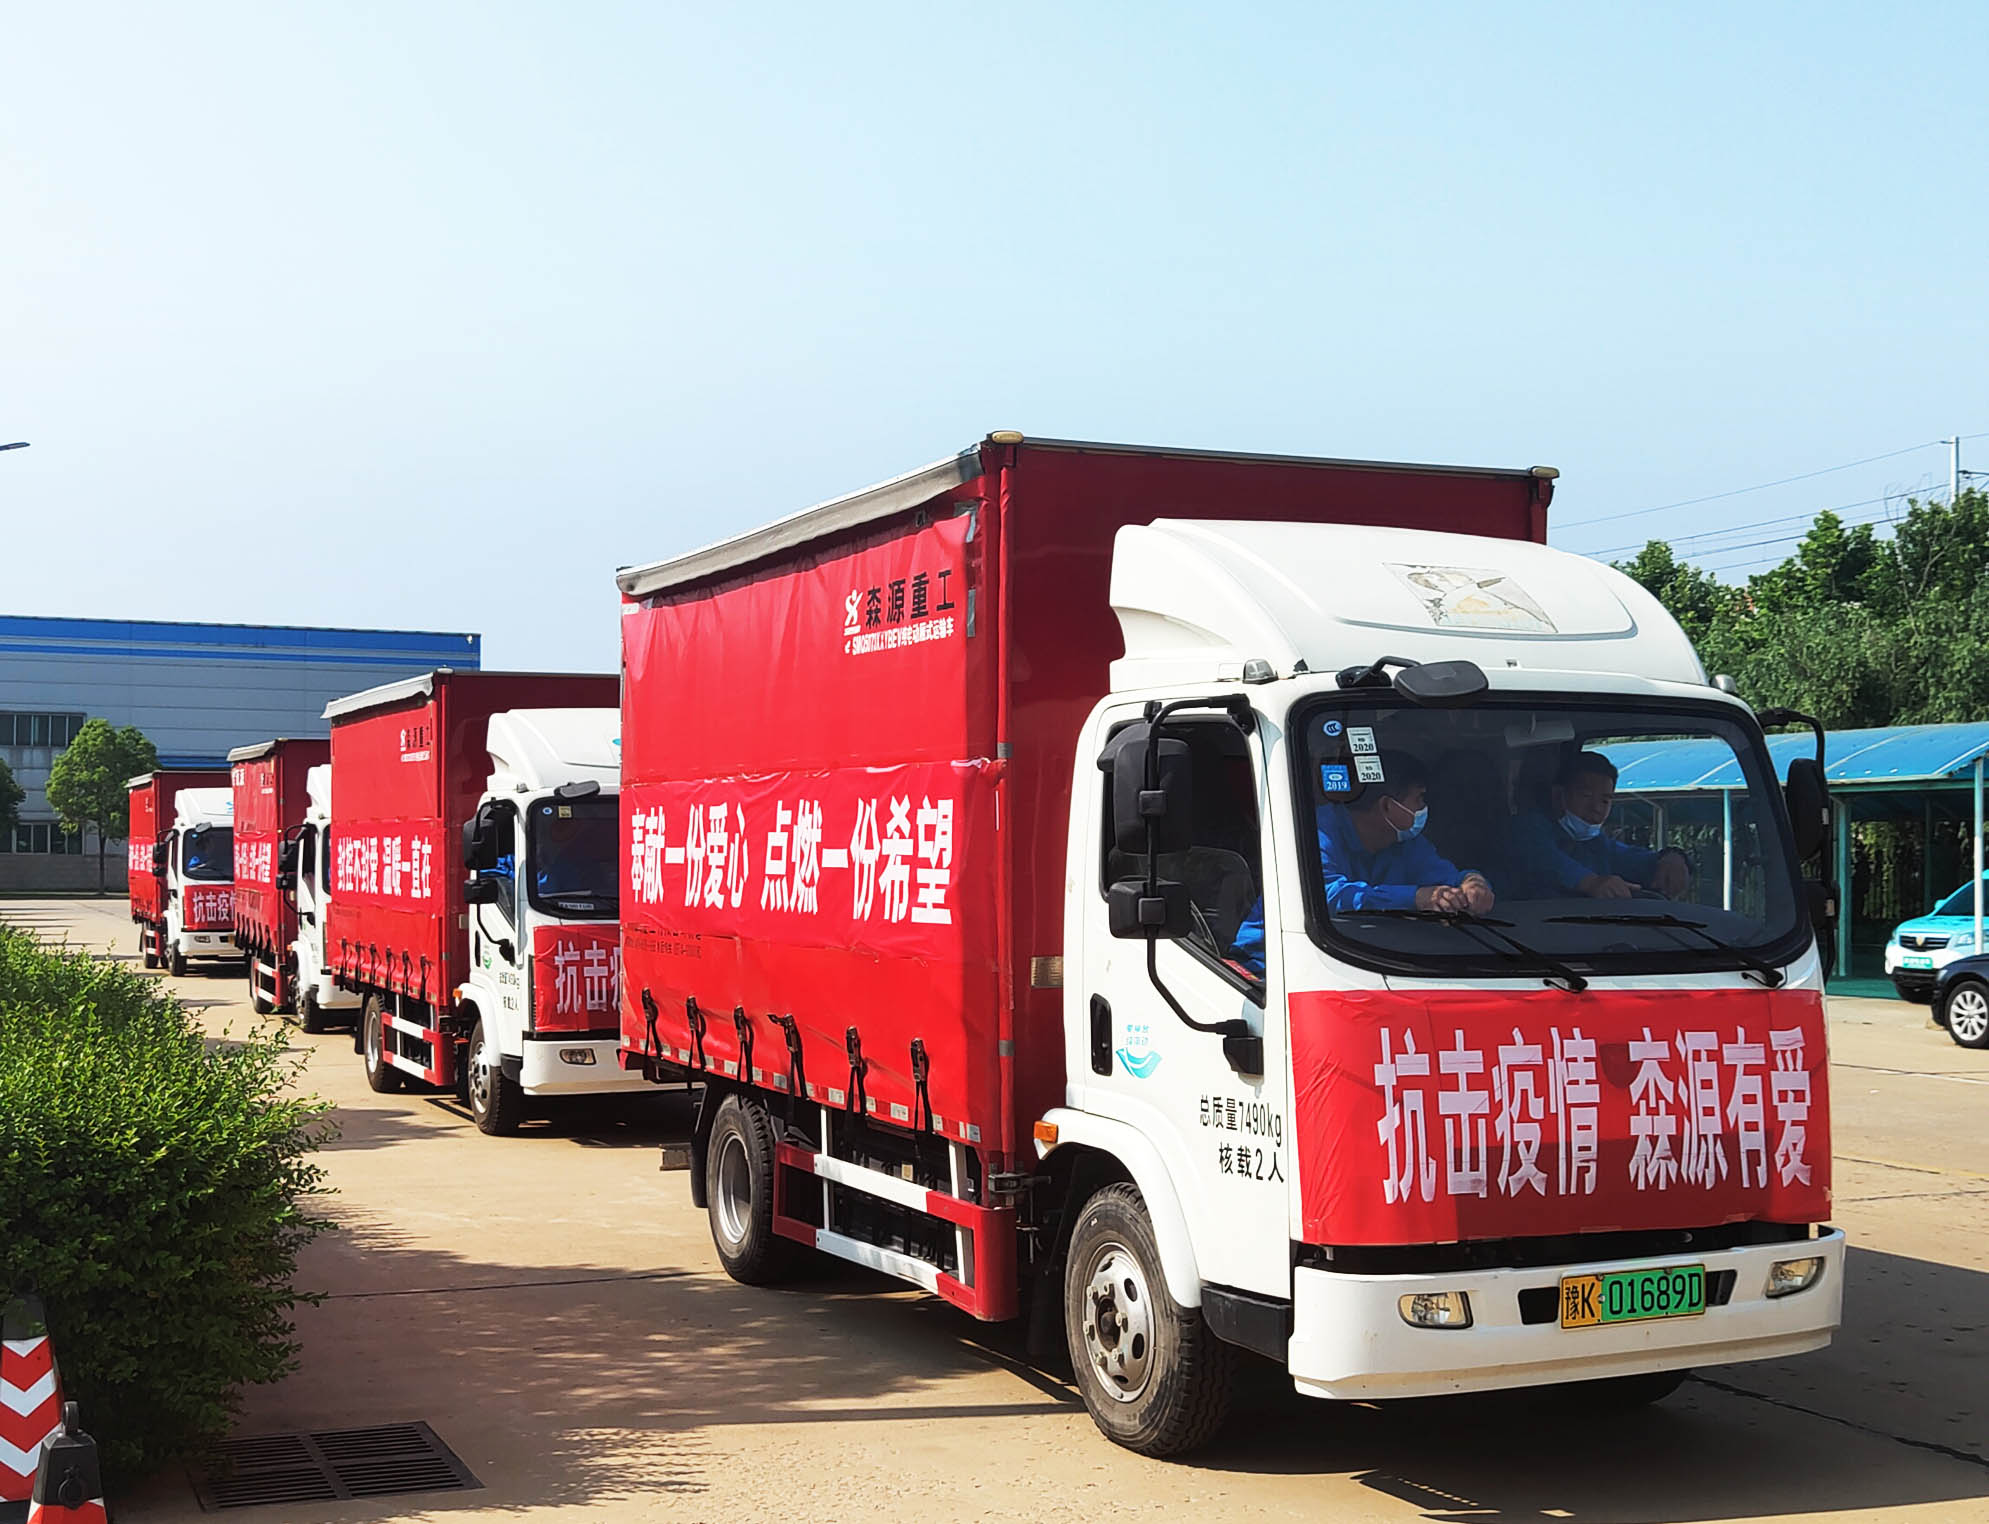 抗击疫情 头头有爱 | 头头中国电子竞技向疫情区捐赠四卡车米、面、蔬菜爱心物资